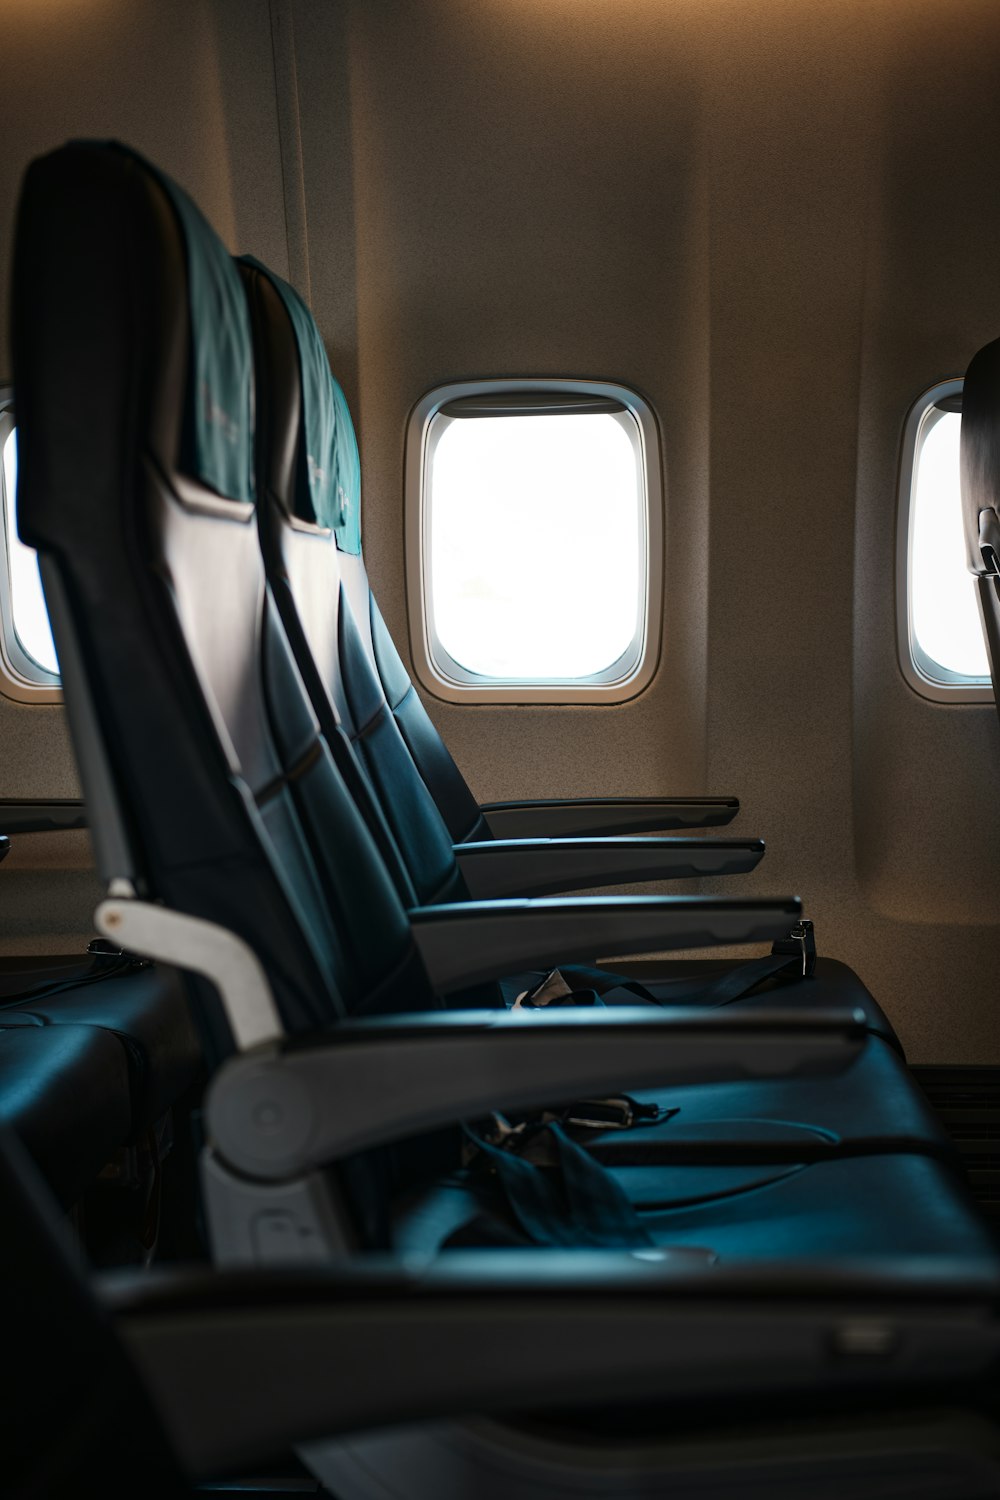 eine Reihe leerer Sitze in einem Flugzeug